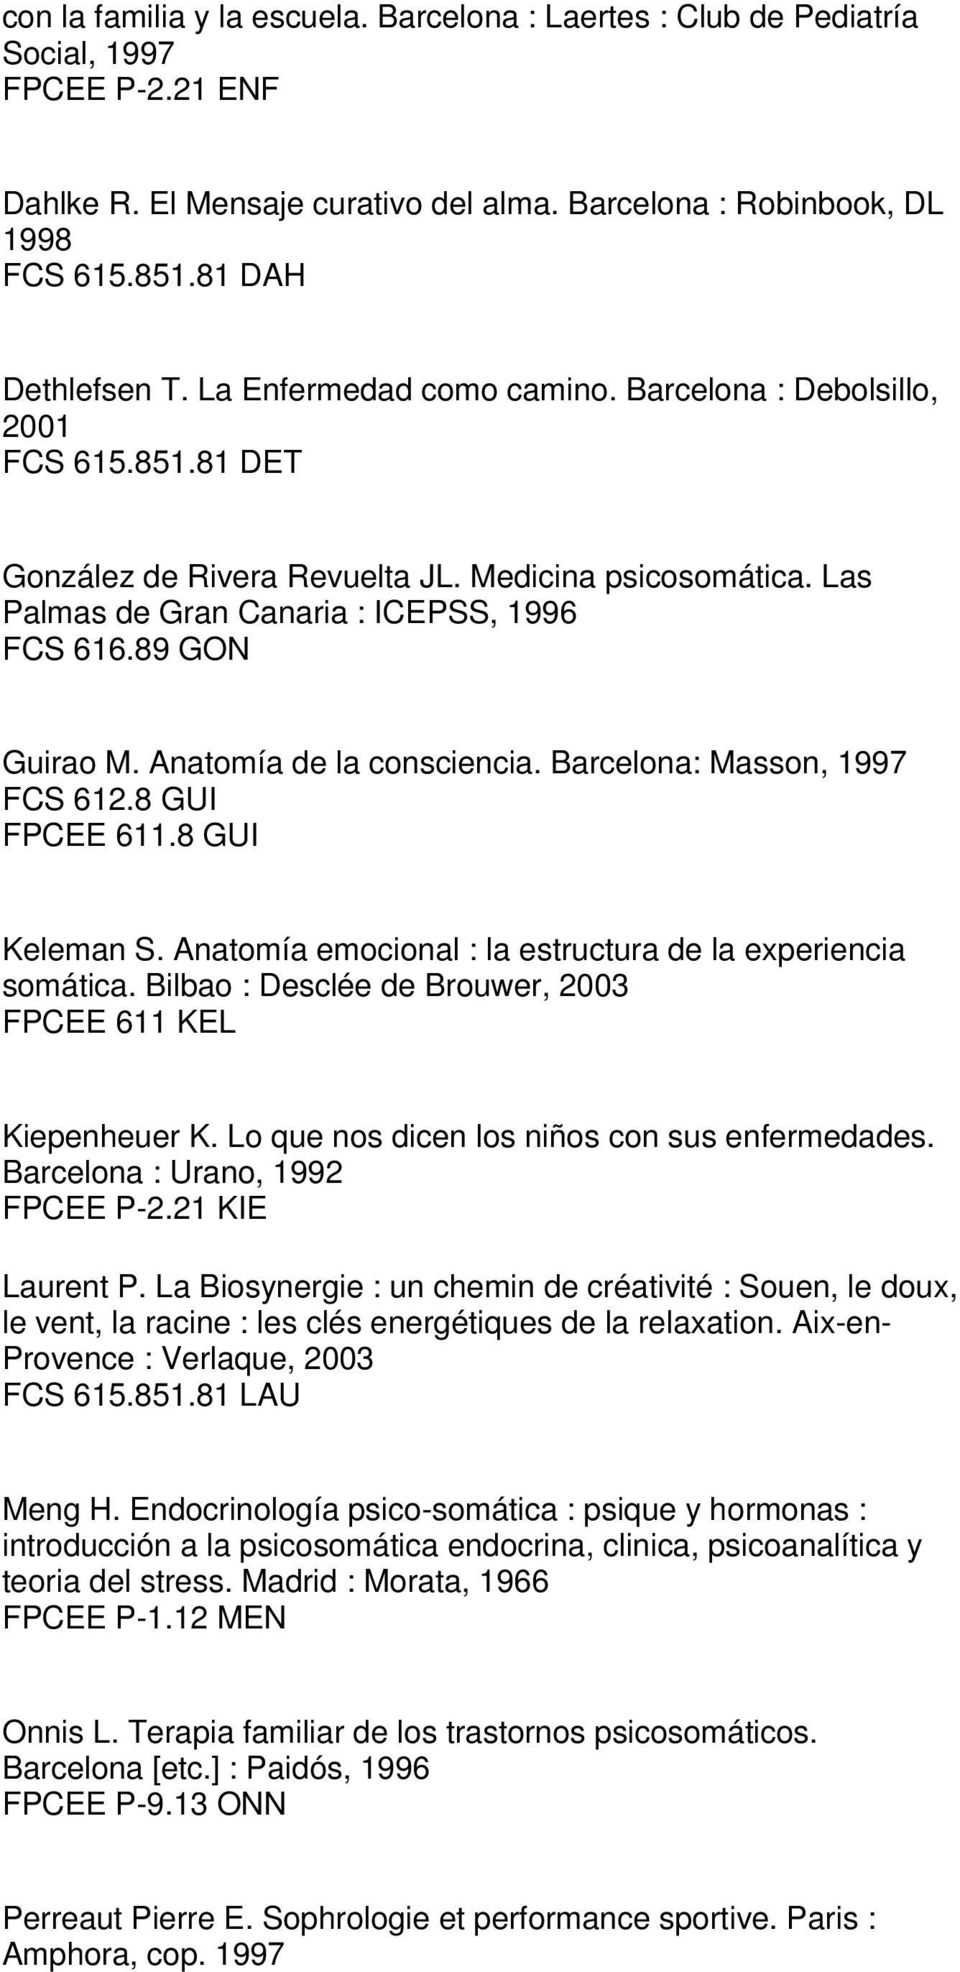 Las Palmas de Gran Canaria : ICEPSS, 1996 FCS 616.89 GON Guirao M. Anatomía de la consciencia. Barcelona: Masson, 1997 FCS 612.8 GUI FPCEE 611.8 GUI Keleman S.